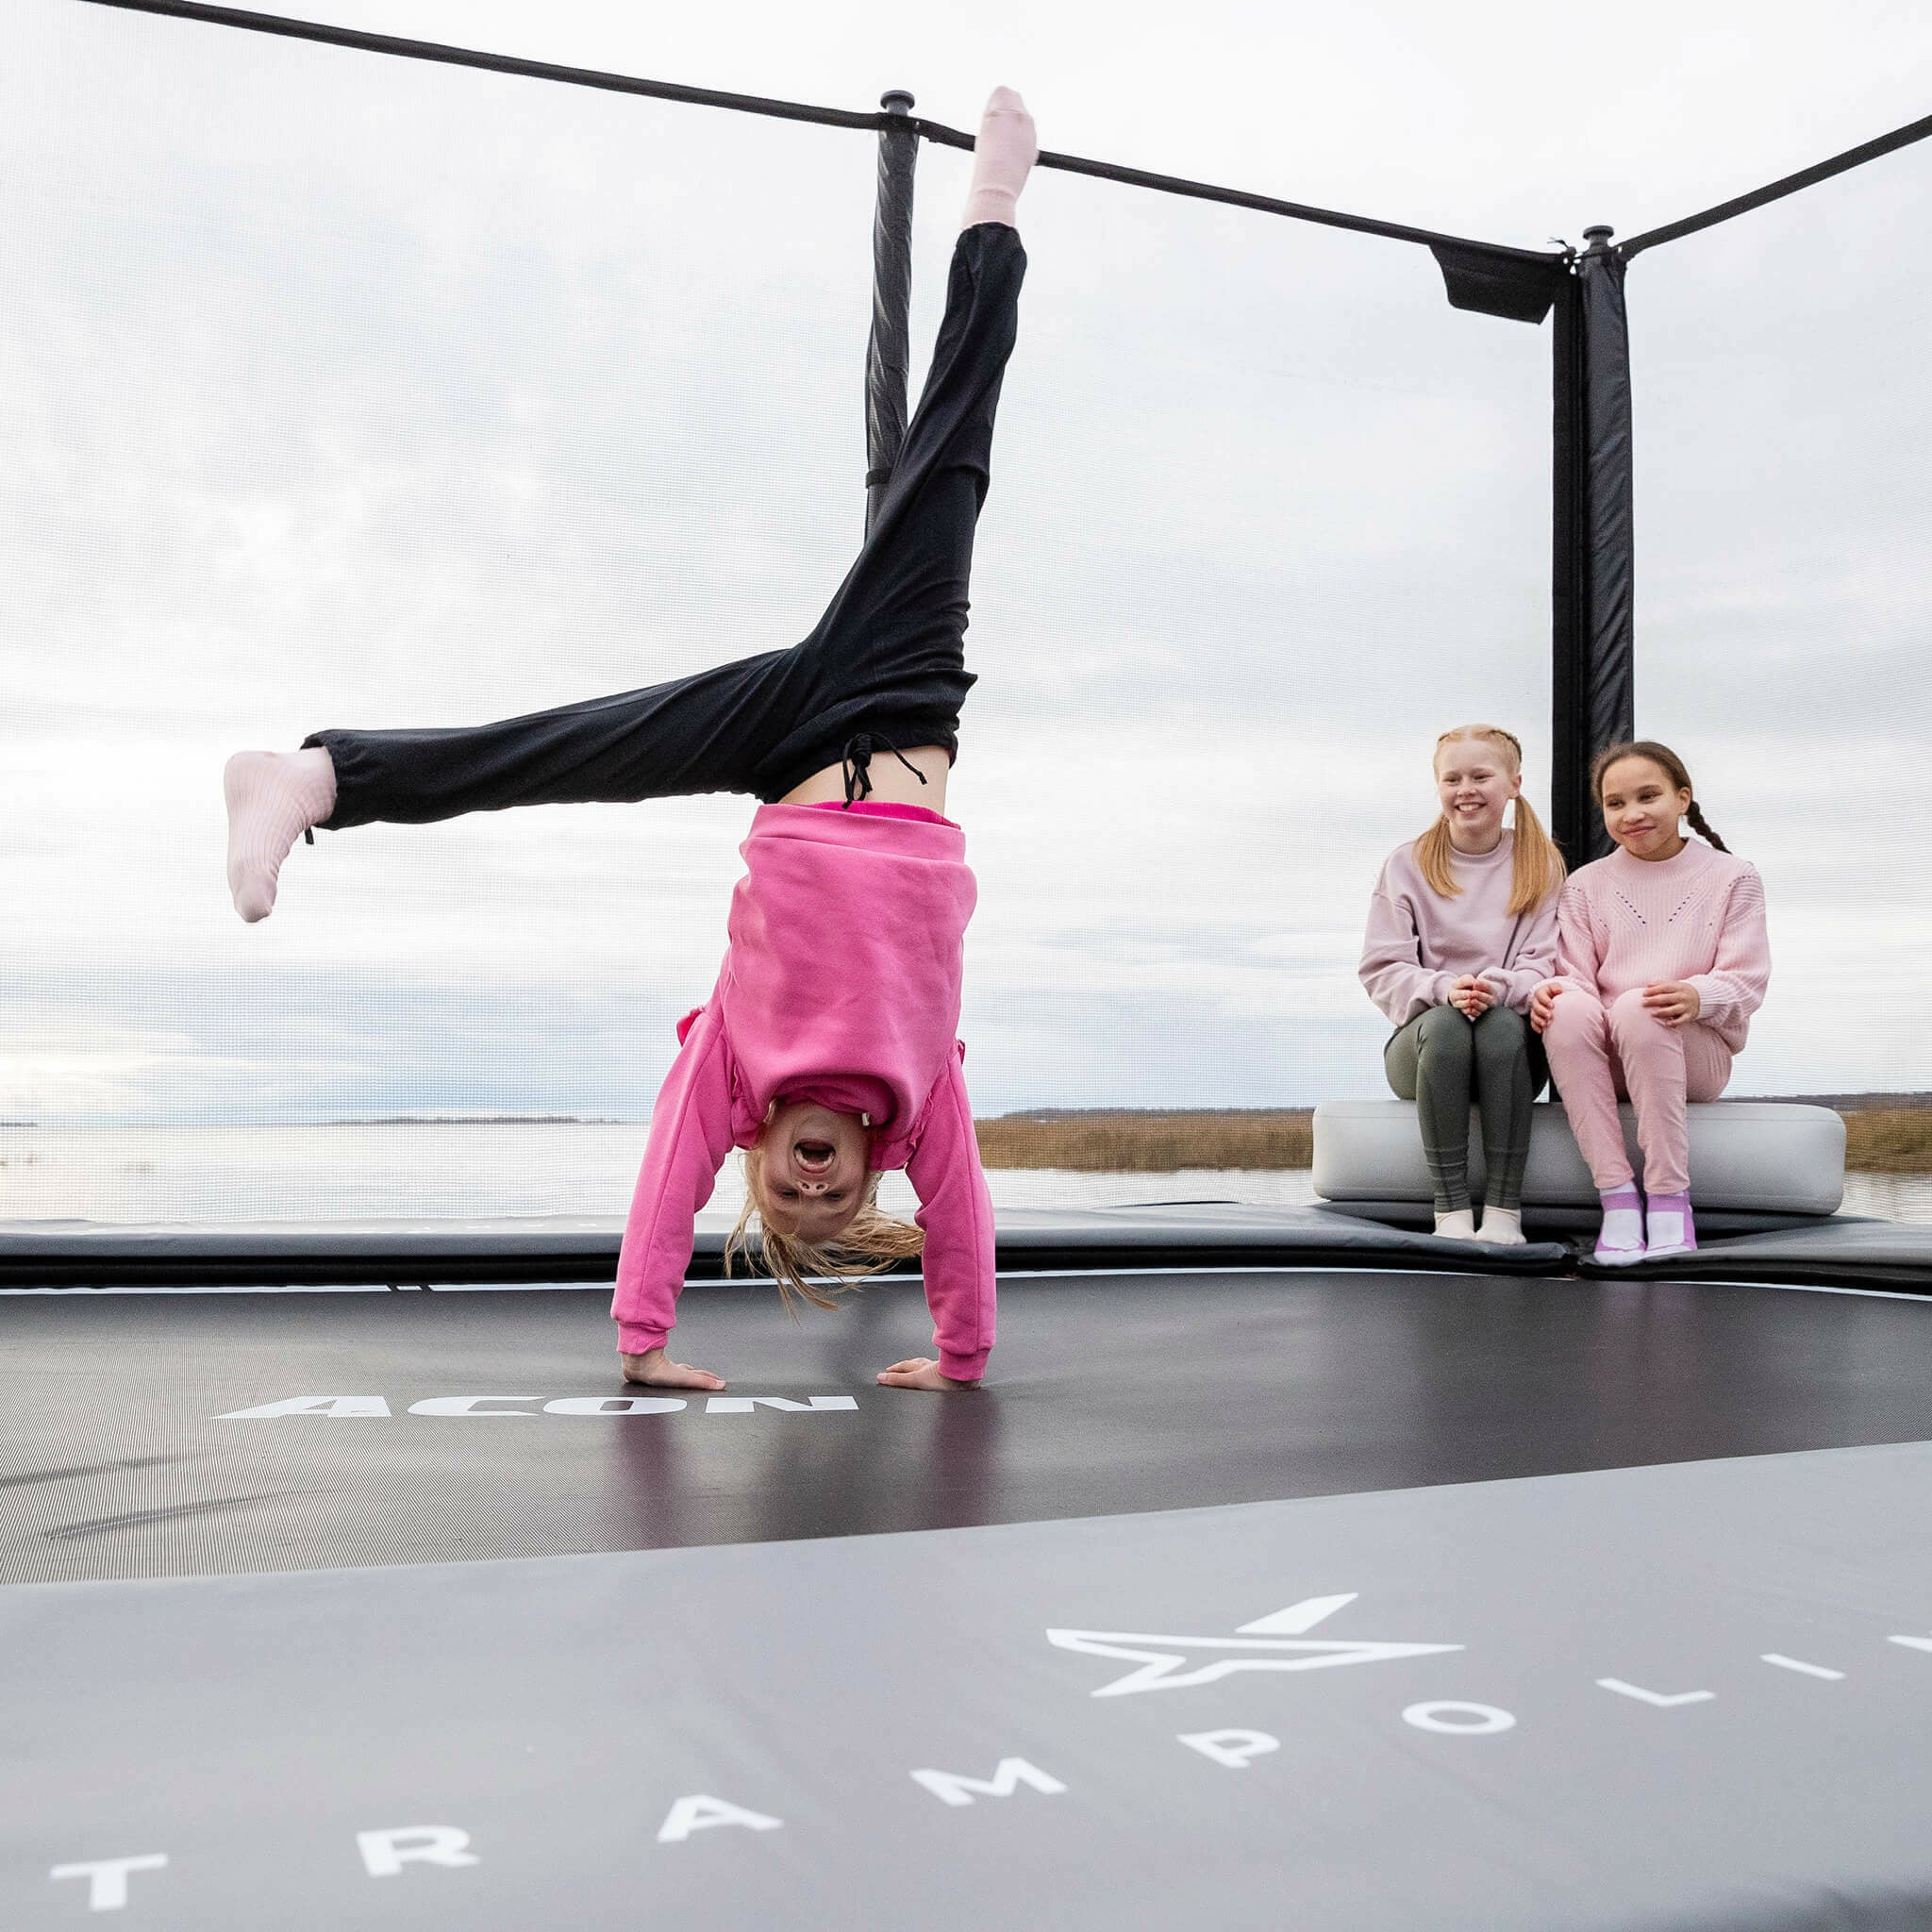 Kaksi tyttöä istuu Acon X Inflatable Triangle Block -puhallettavan kolmioblokin päällä. Tyttö seisoo käsillään trampoliinin päällä.